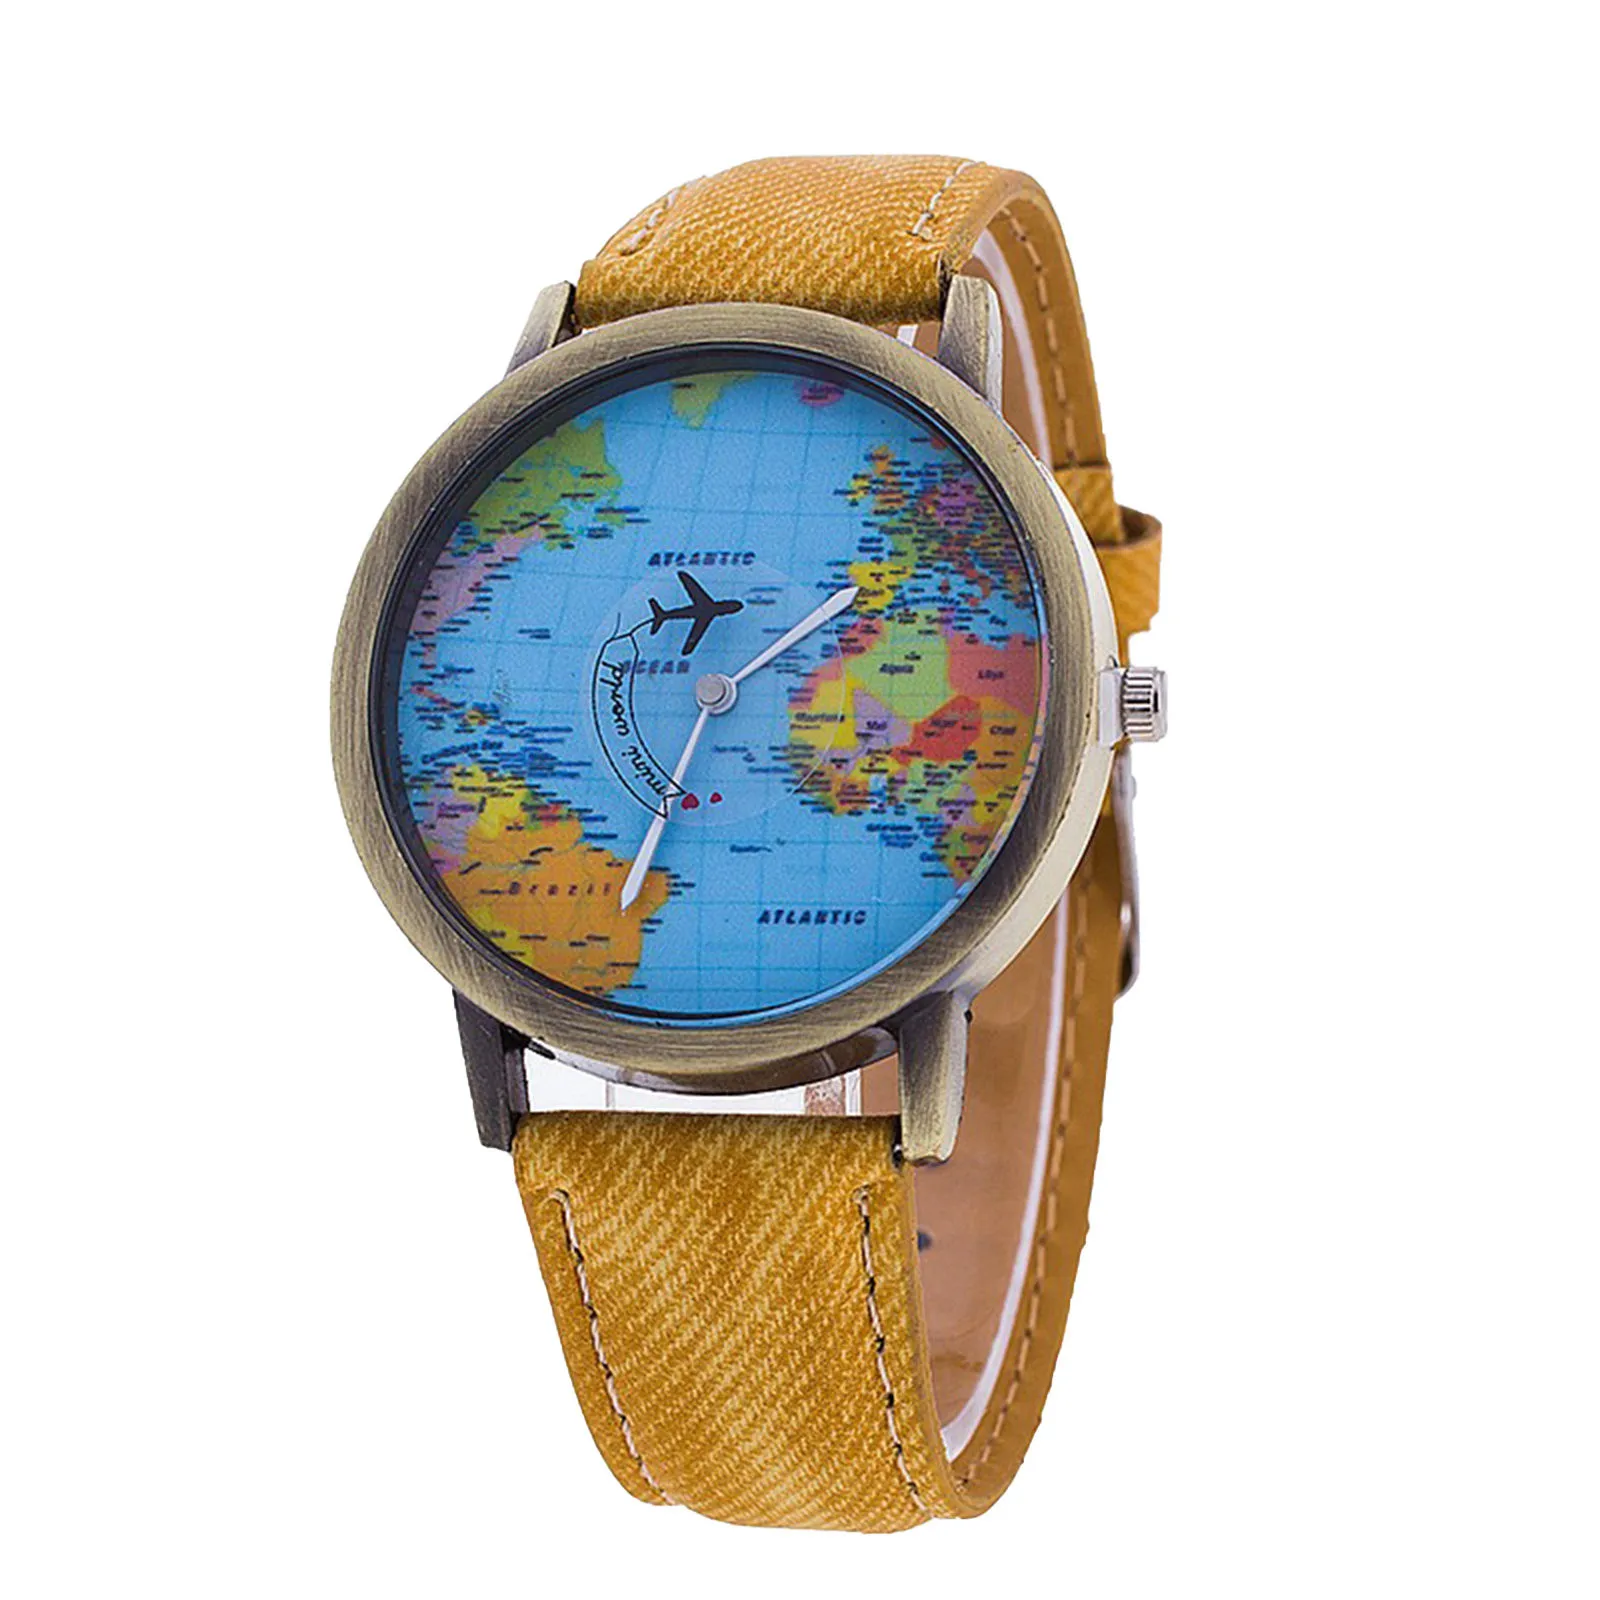 

montre femme relojes para mujer Fashion Retro Belt Quartz Watch Airplane Second Hand Map Watch Unisex часы женские ladies watch